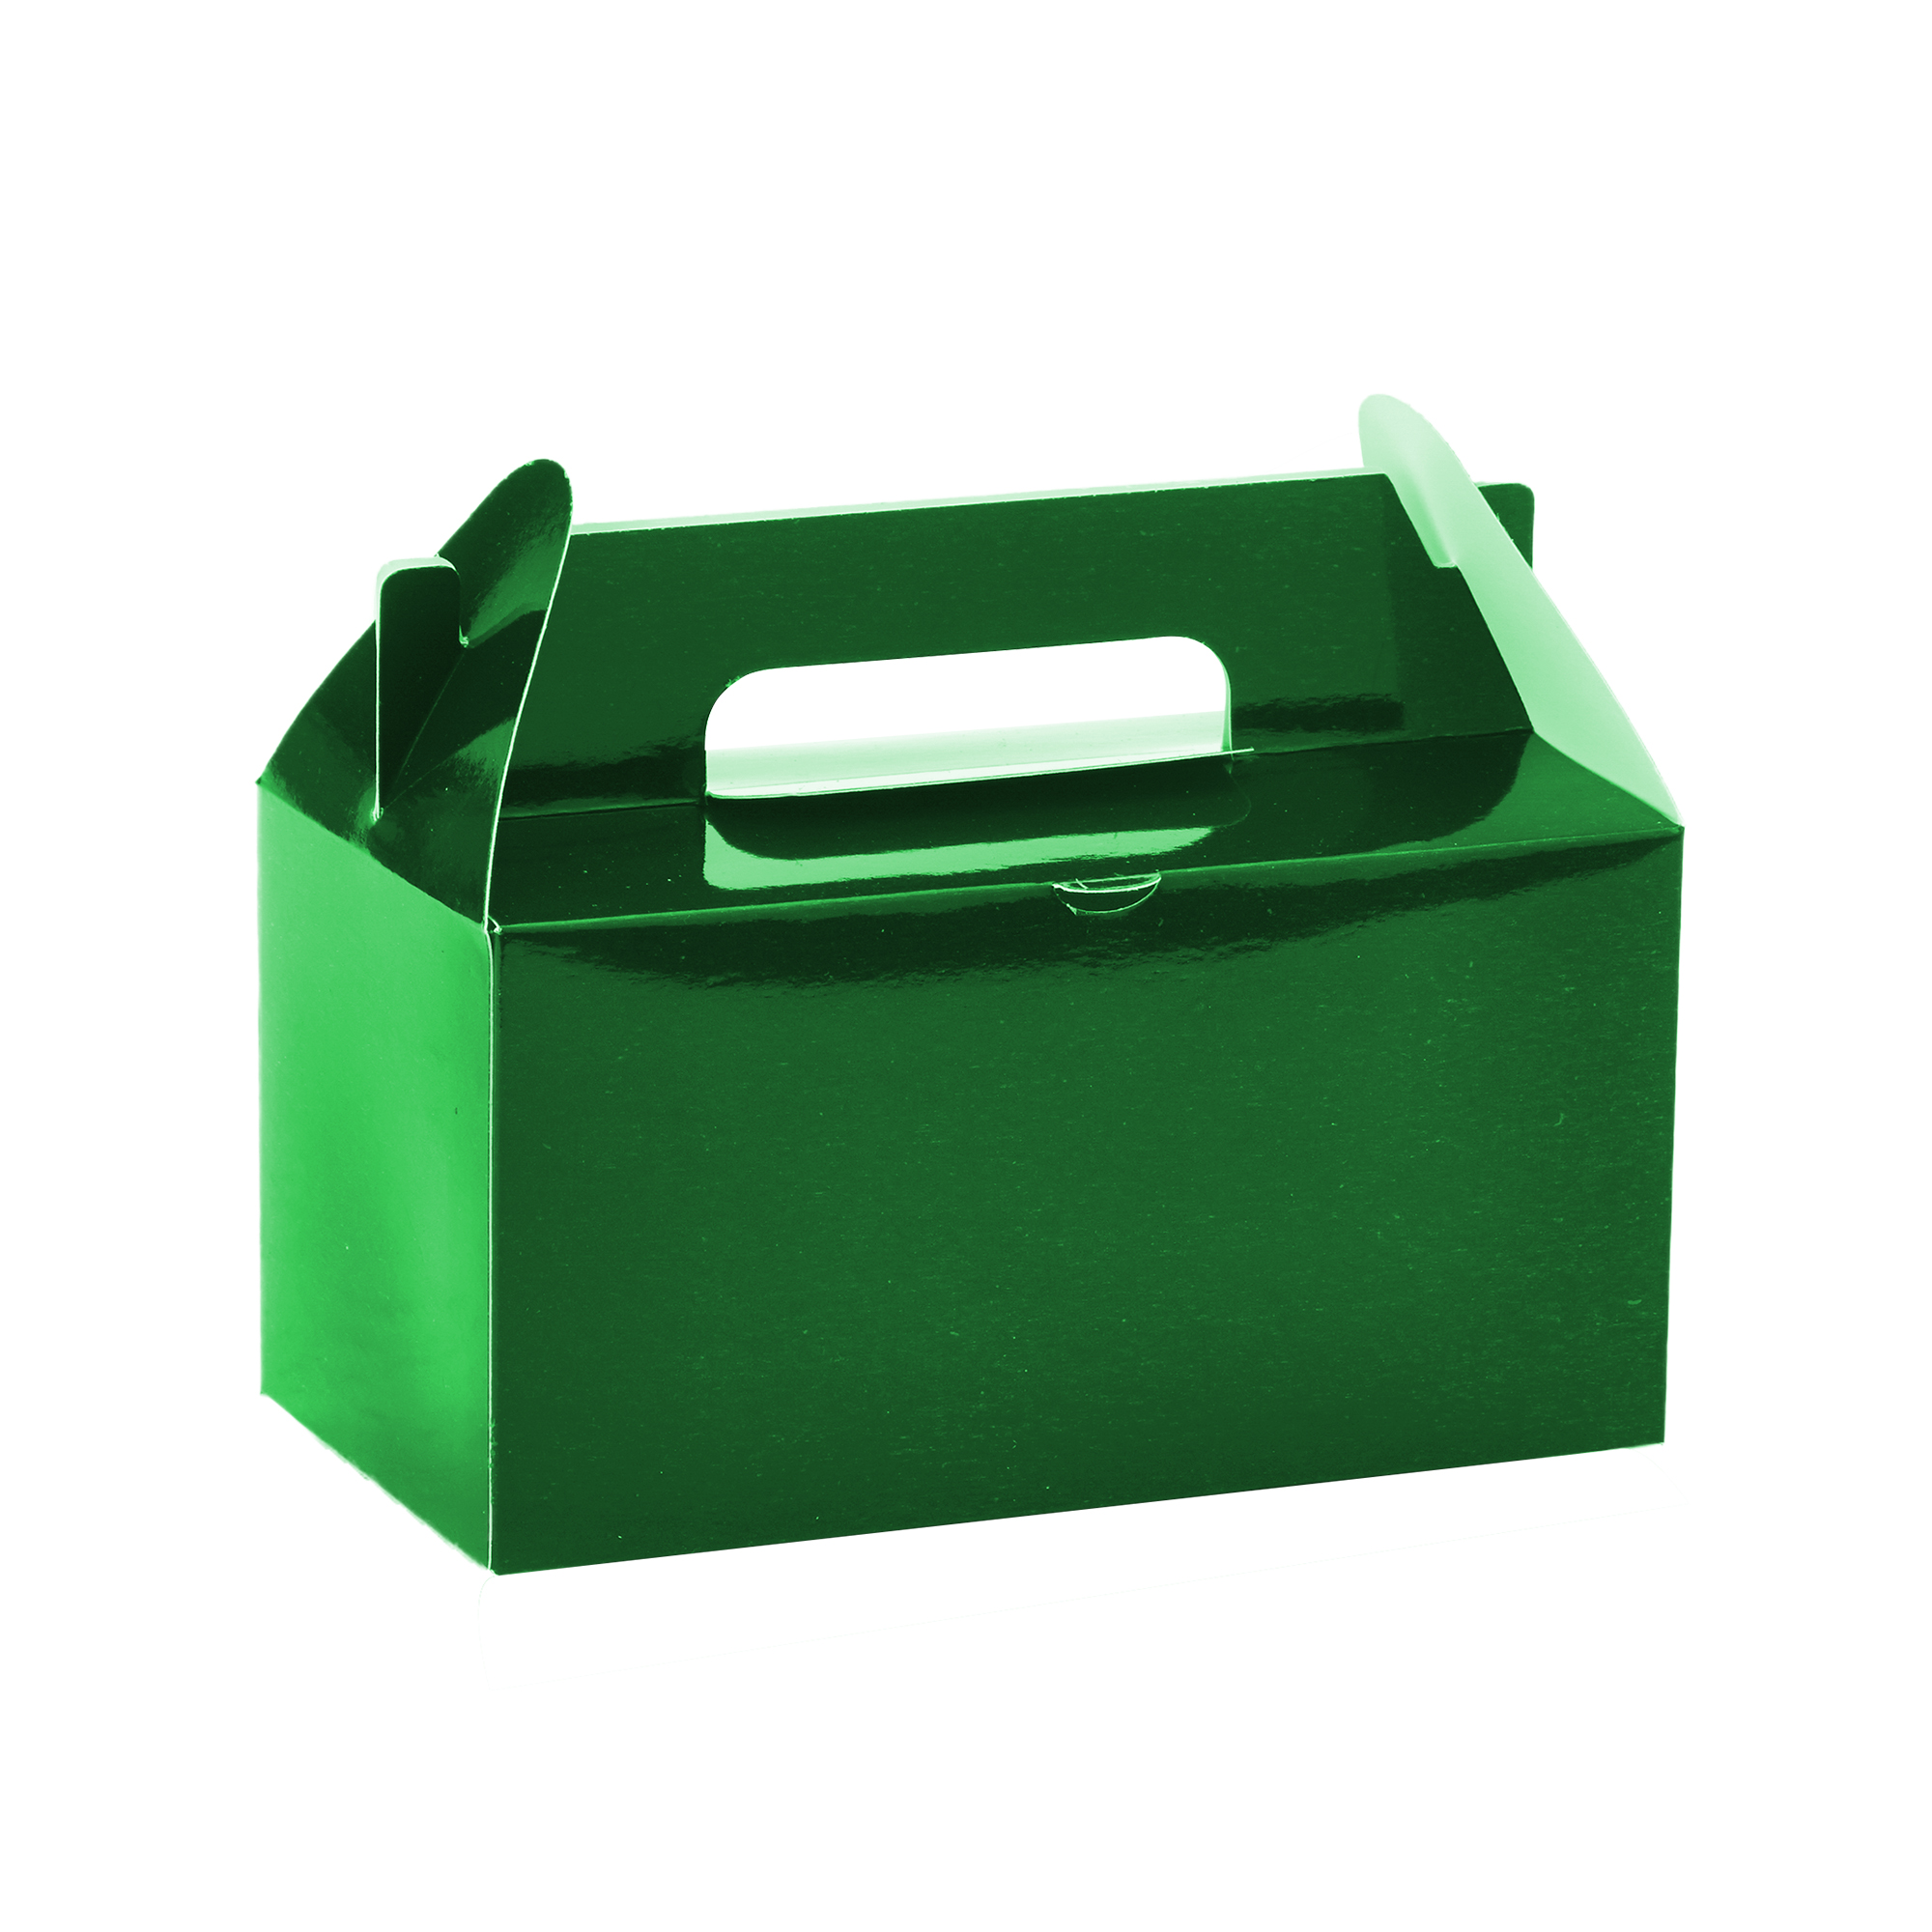 Takeout Box 12pcs/bag - Green